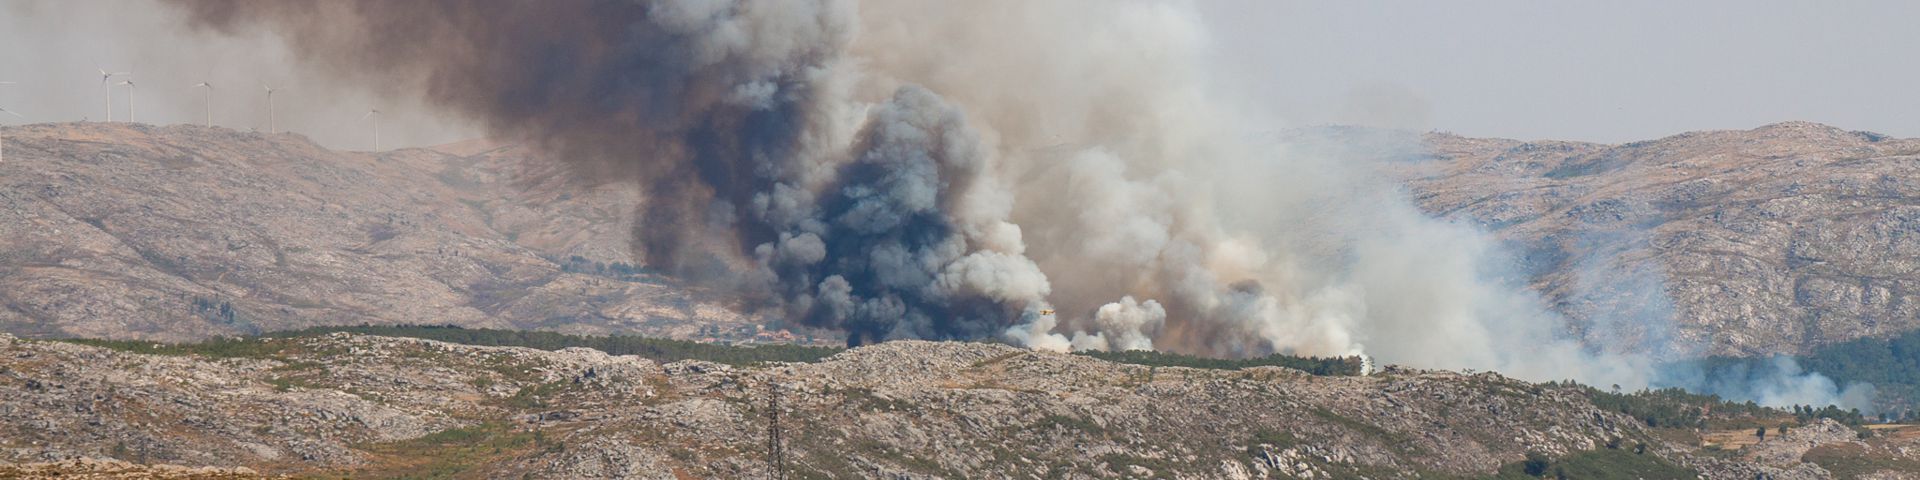 Waldbrände in Portugal | Ursachen + Folgen